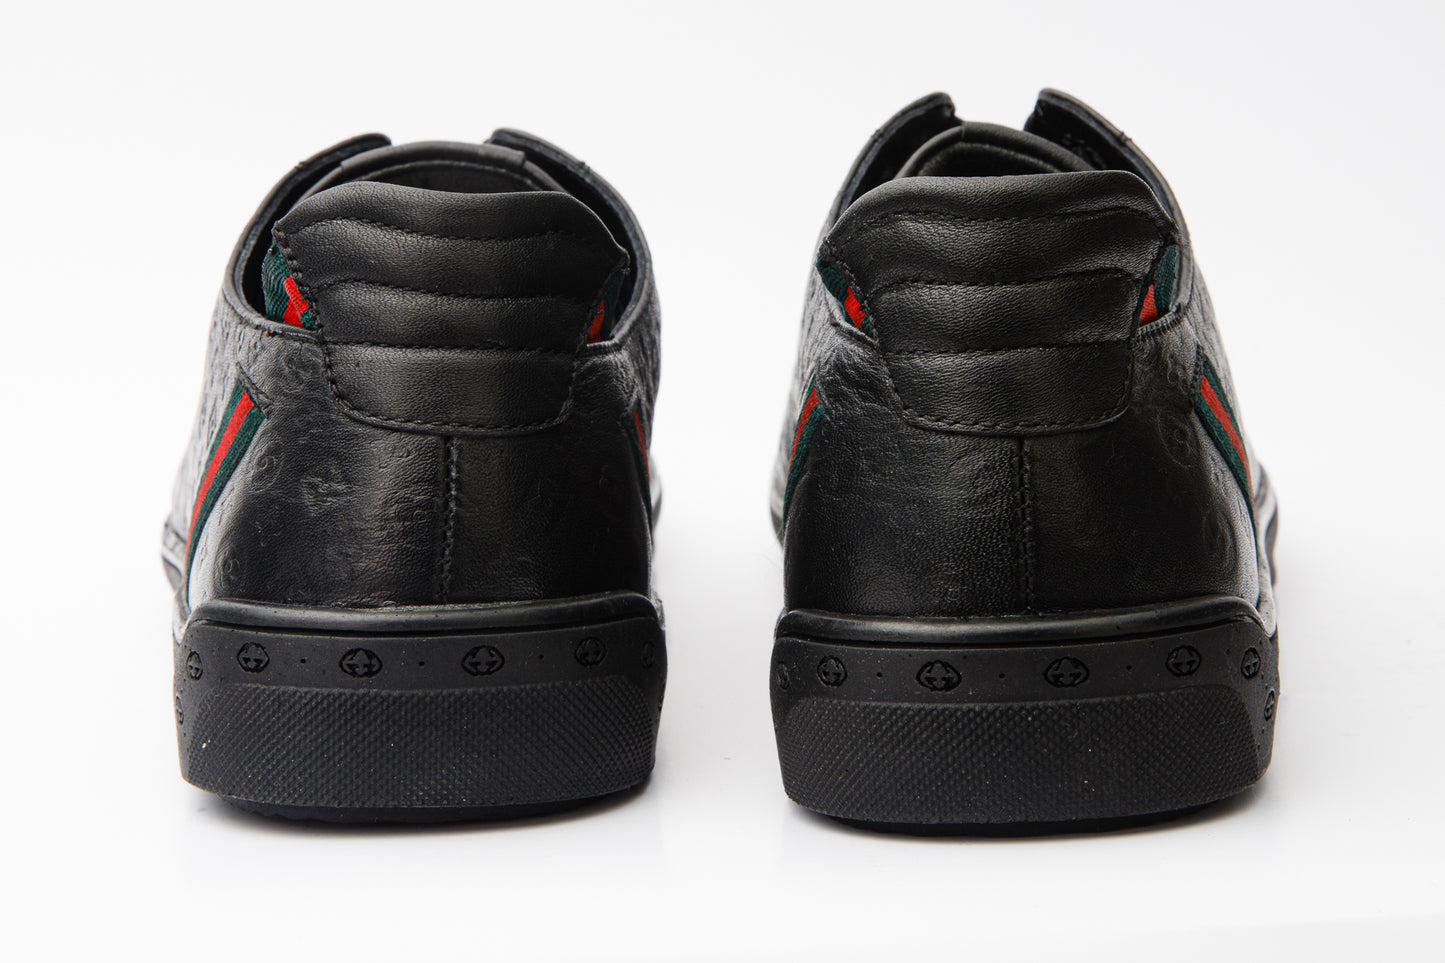 The Getto Black Leather Men Sneaker